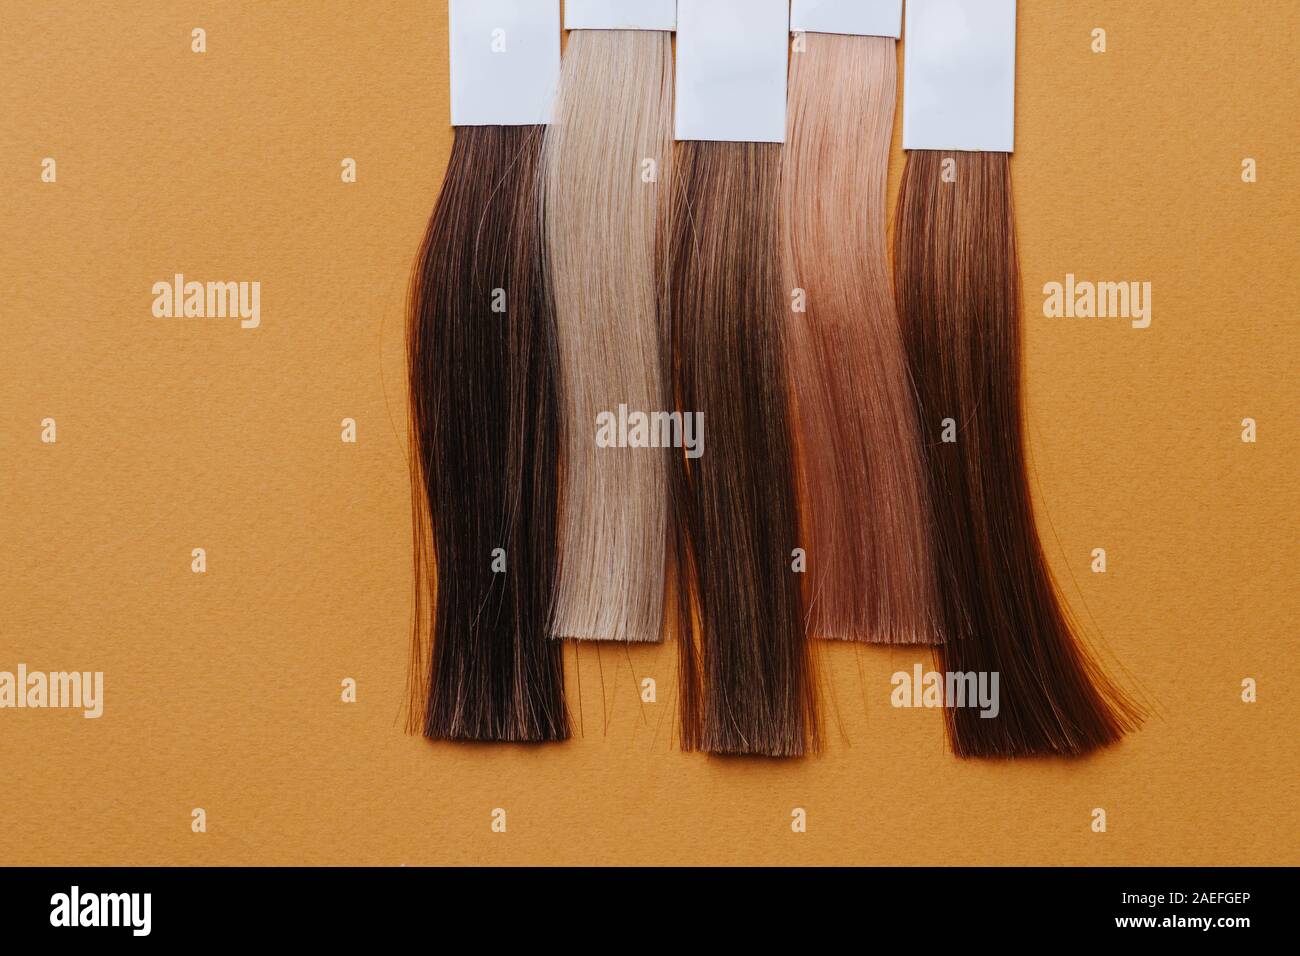 Ensemble Vertical de cheveux teints serrures. Les échantillons dans le salon de coiffure sur surface orange Banque D'Images